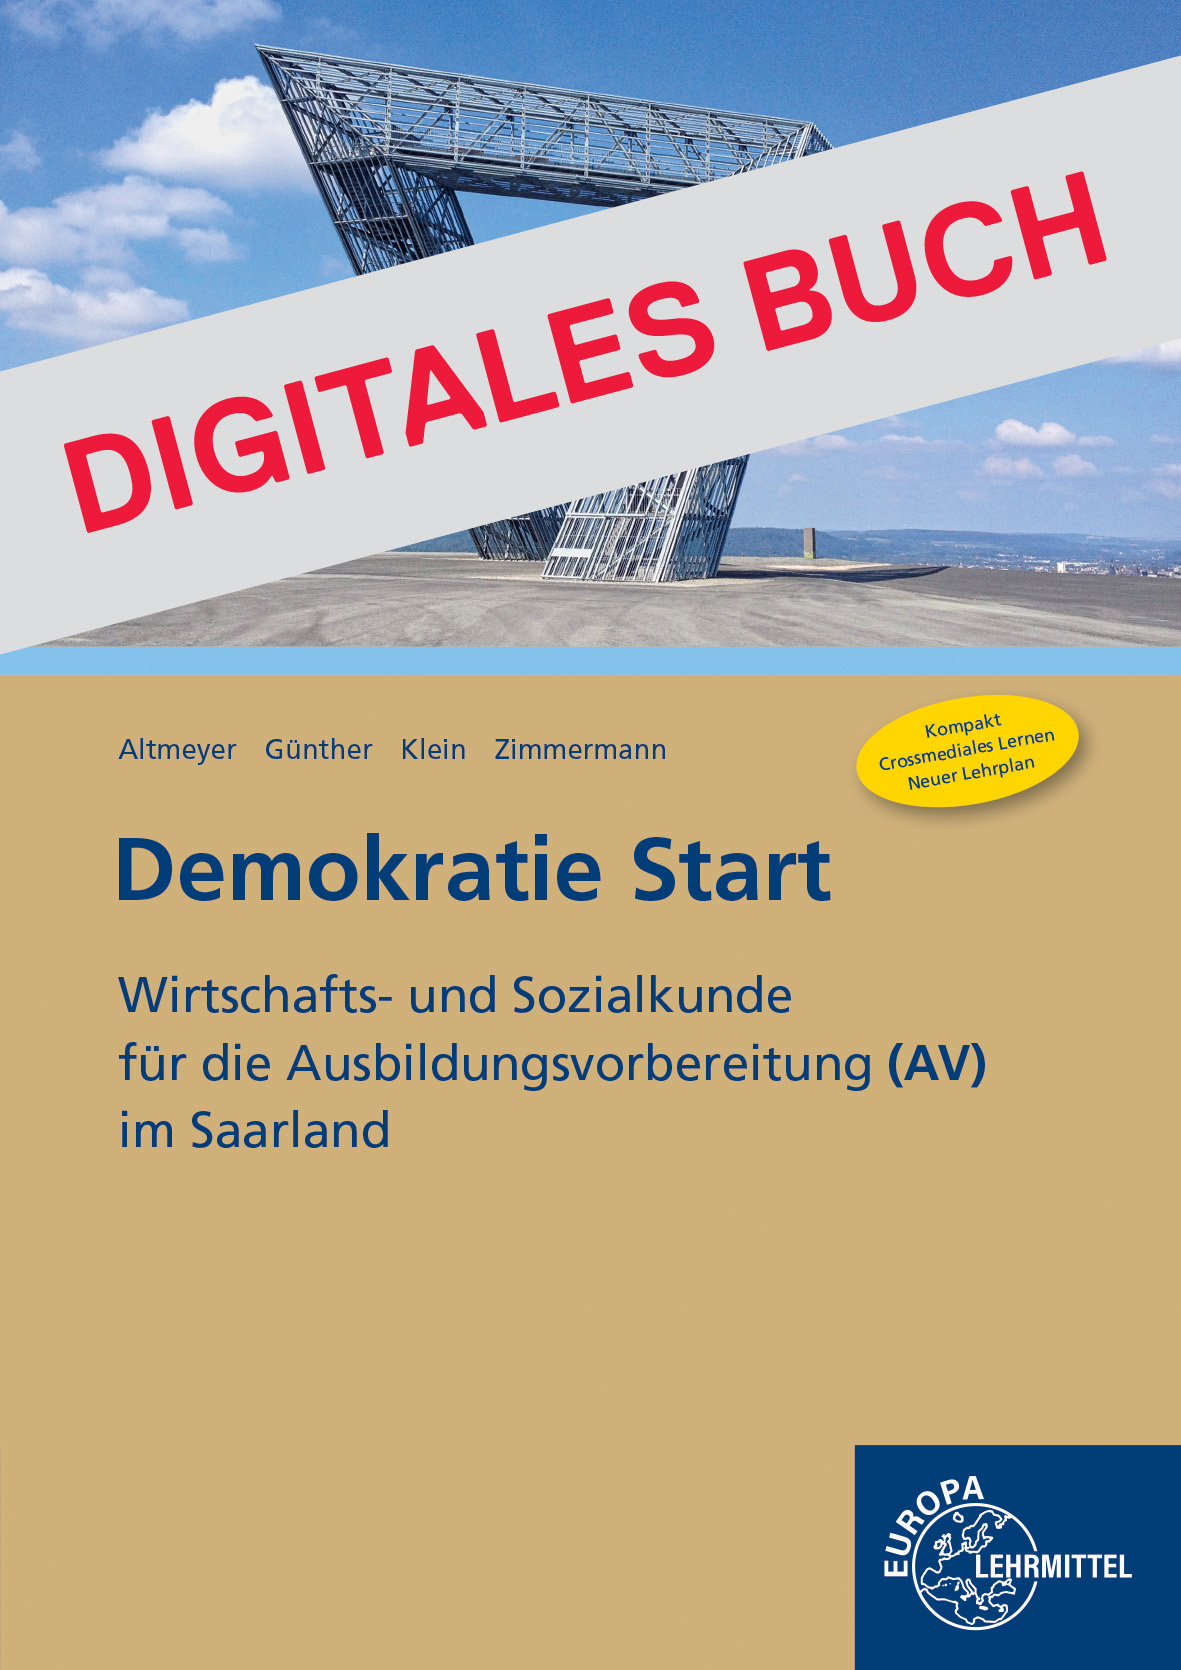 Demokratie Start - Saarland (AV) - Digitales Buch